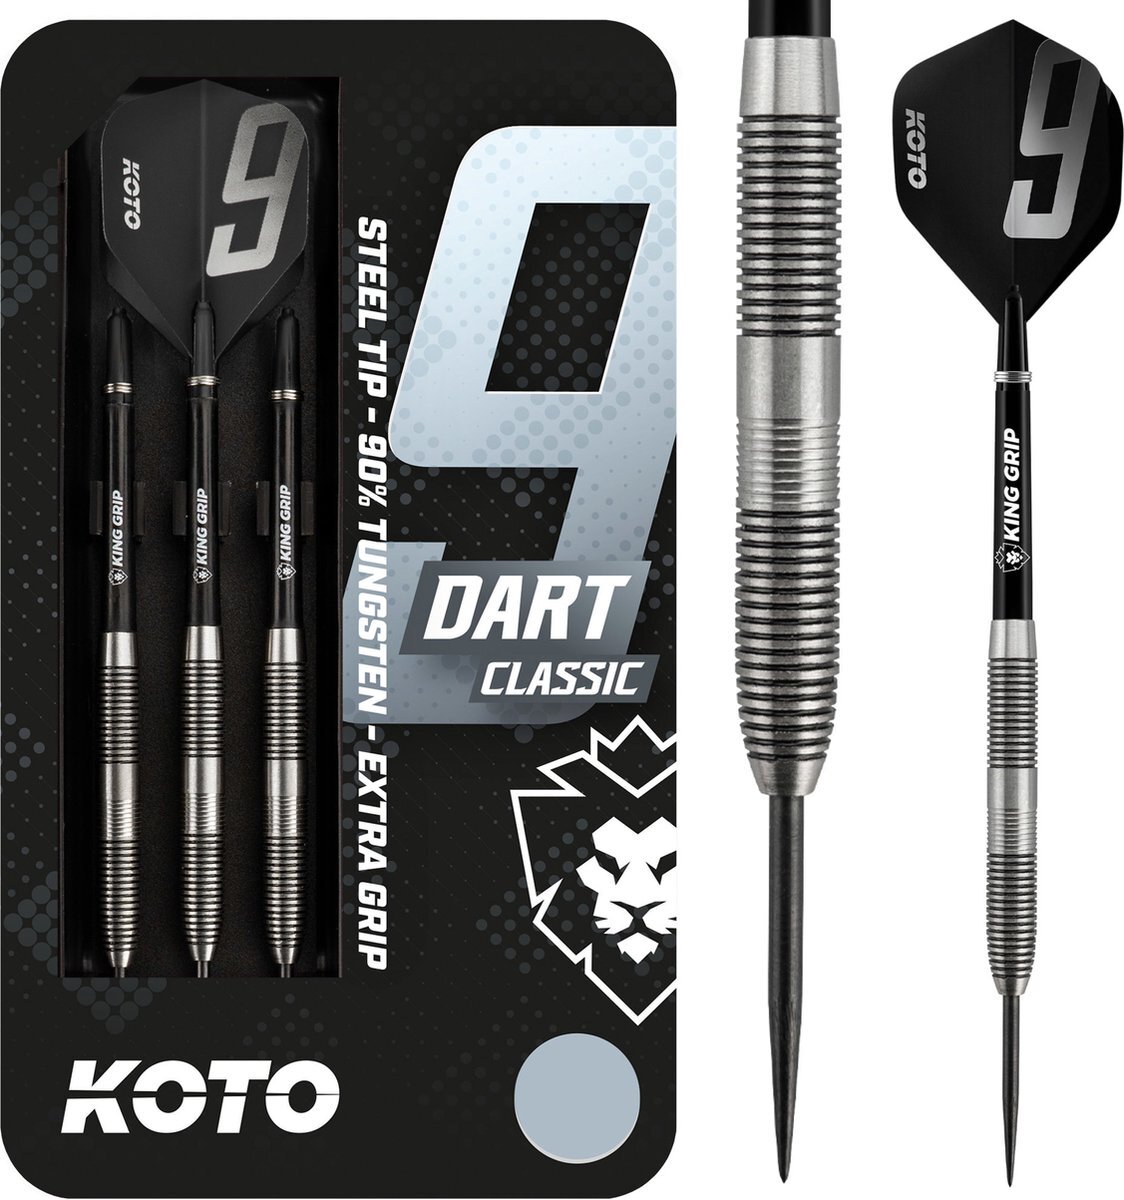 Koto 9-Dart Classic 90% - Dartpijlen - 22 Gram - Tungsten Darts - 3 Pijlen - Dartset - Met Dartcase